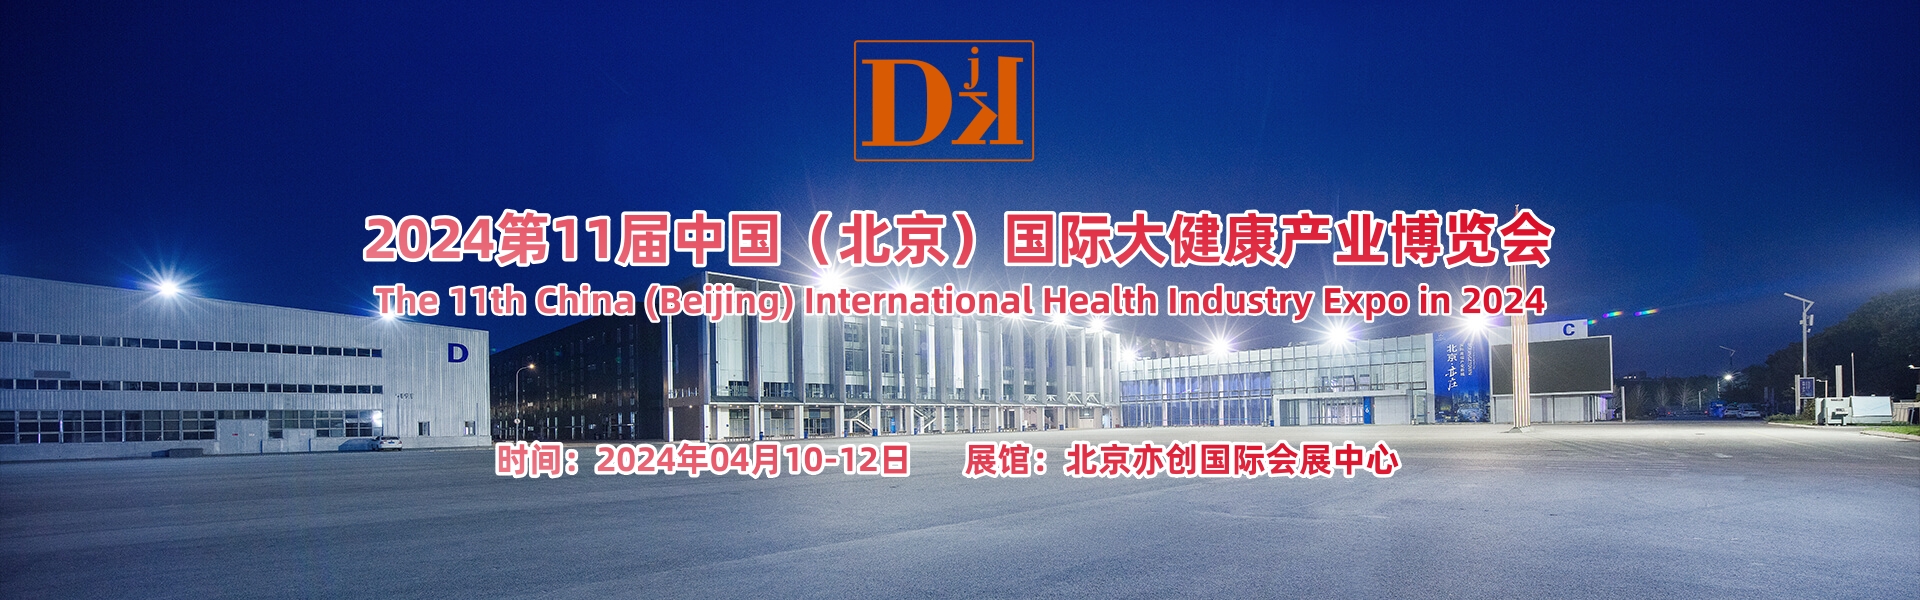 2024大健康展/第十一届北京国际大健康产业博览会